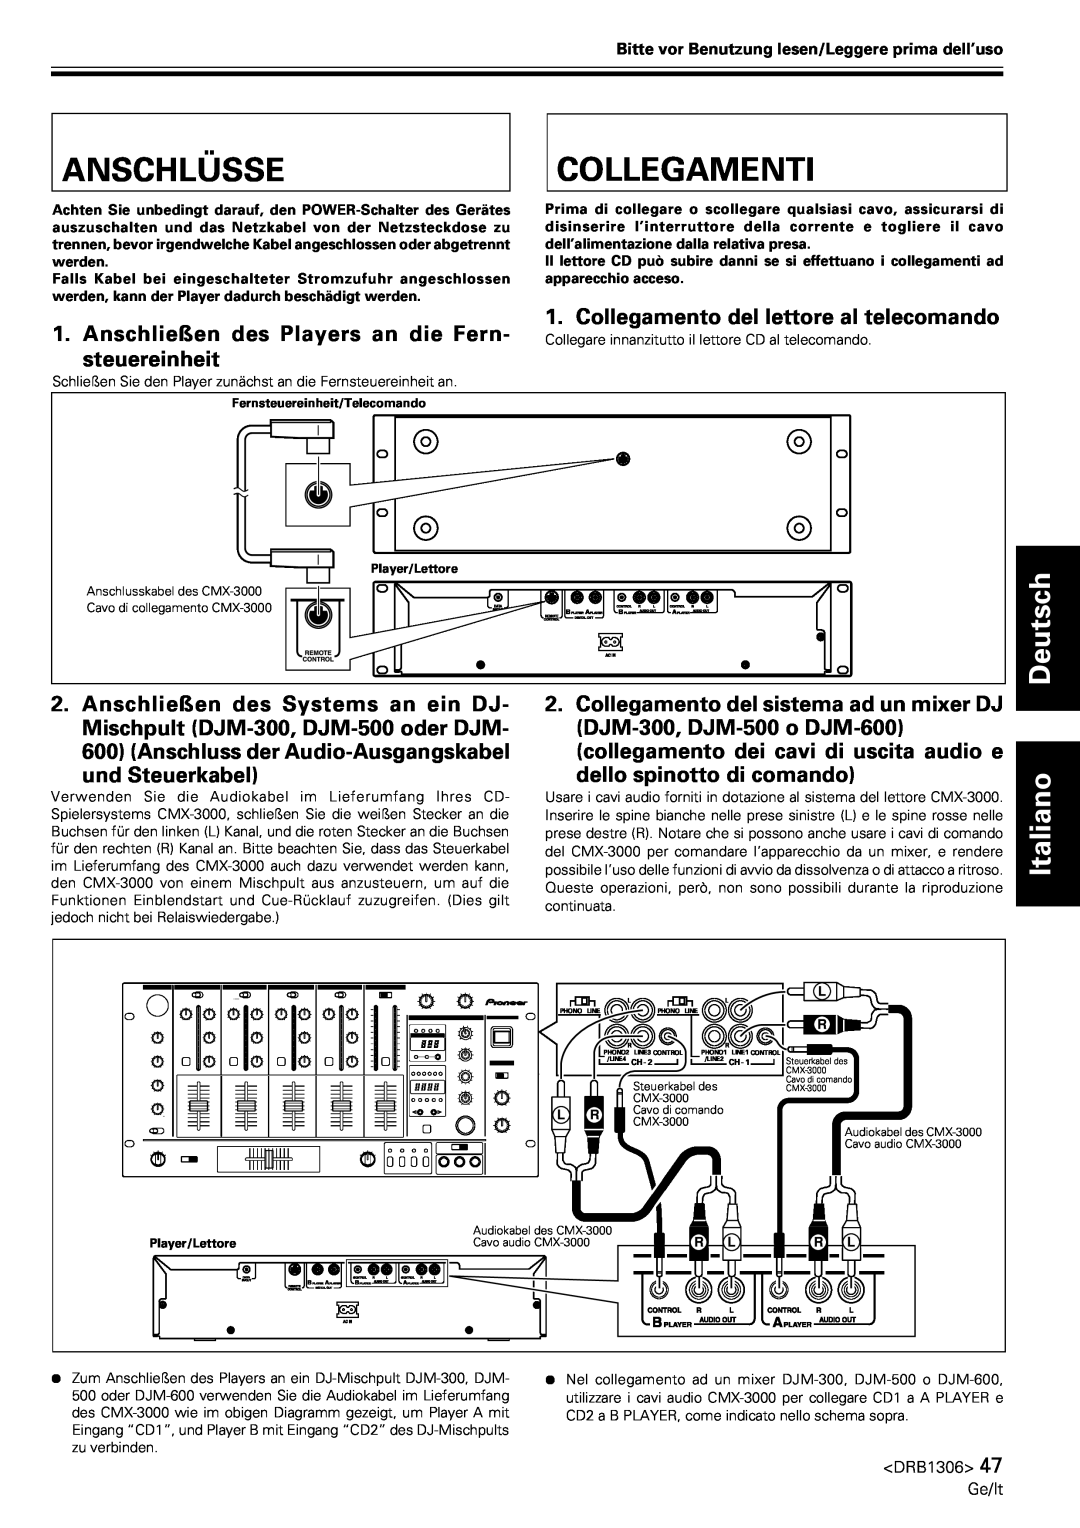 Pioneer CMX-3000 Anschlüsse, Collegamenti, Deutsch, Italiano, Collegamento del lettore al telecomando, steuereinheit 